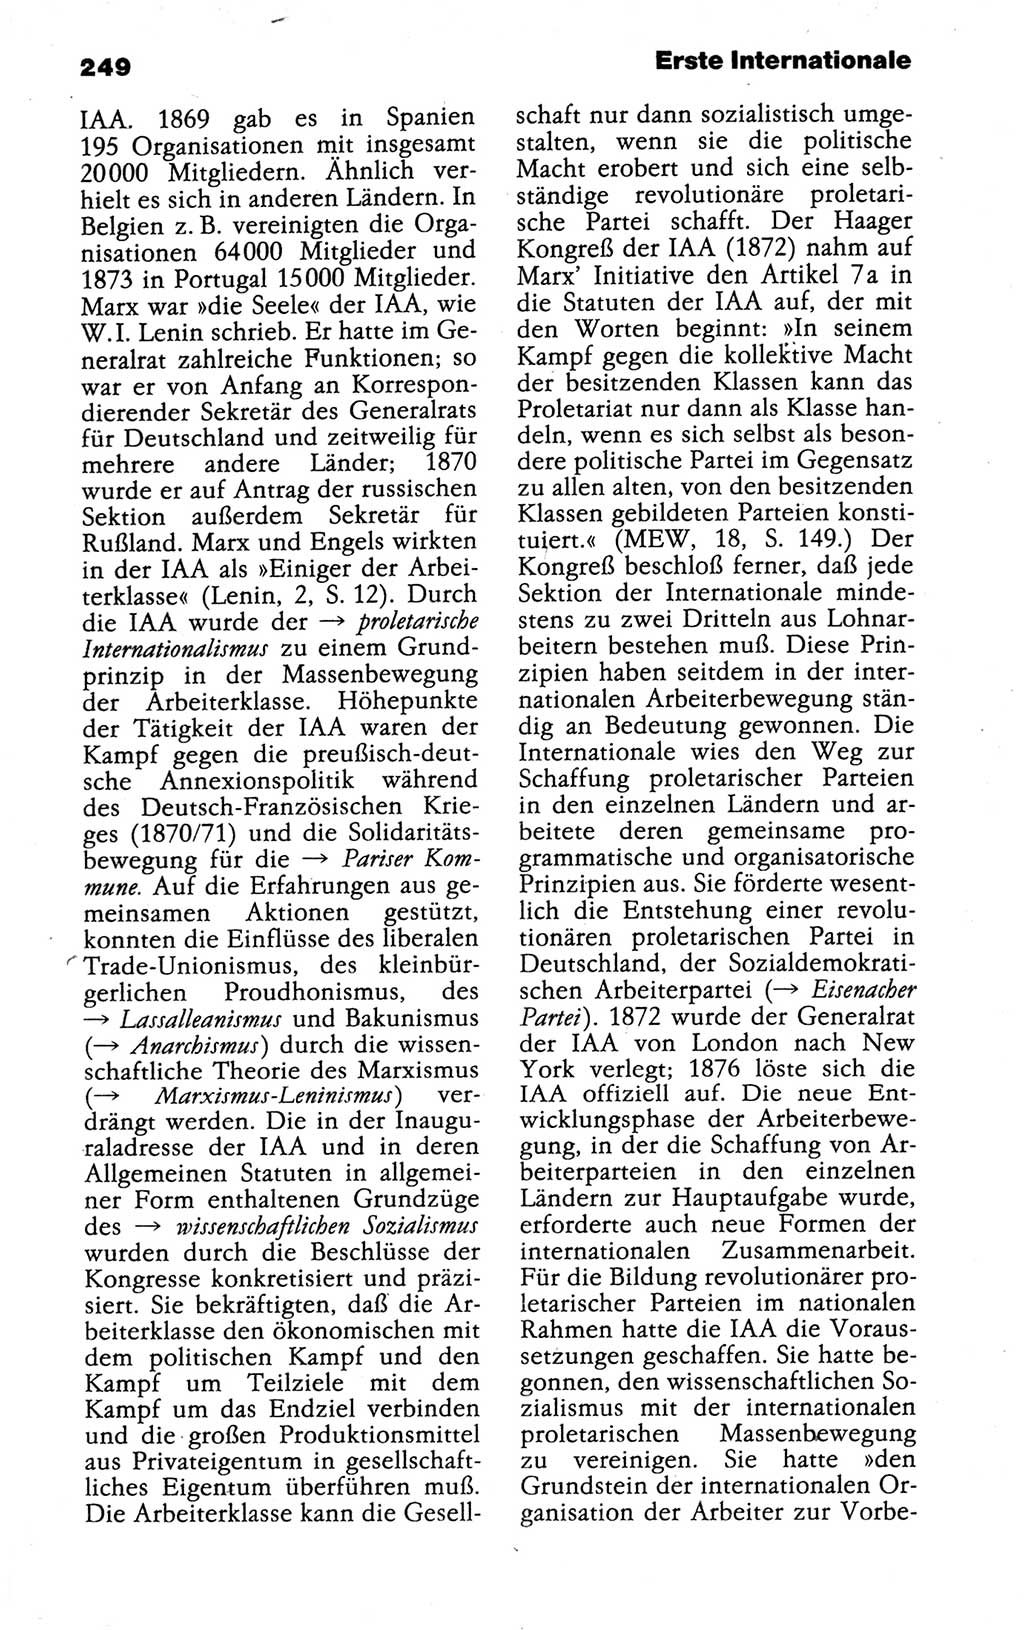 Kleines politisches Wörterbuch [Deutsche Demokratische Republik (DDR)] 1988, Seite 249 (Kl. pol. Wb. DDR 1988, S. 249)